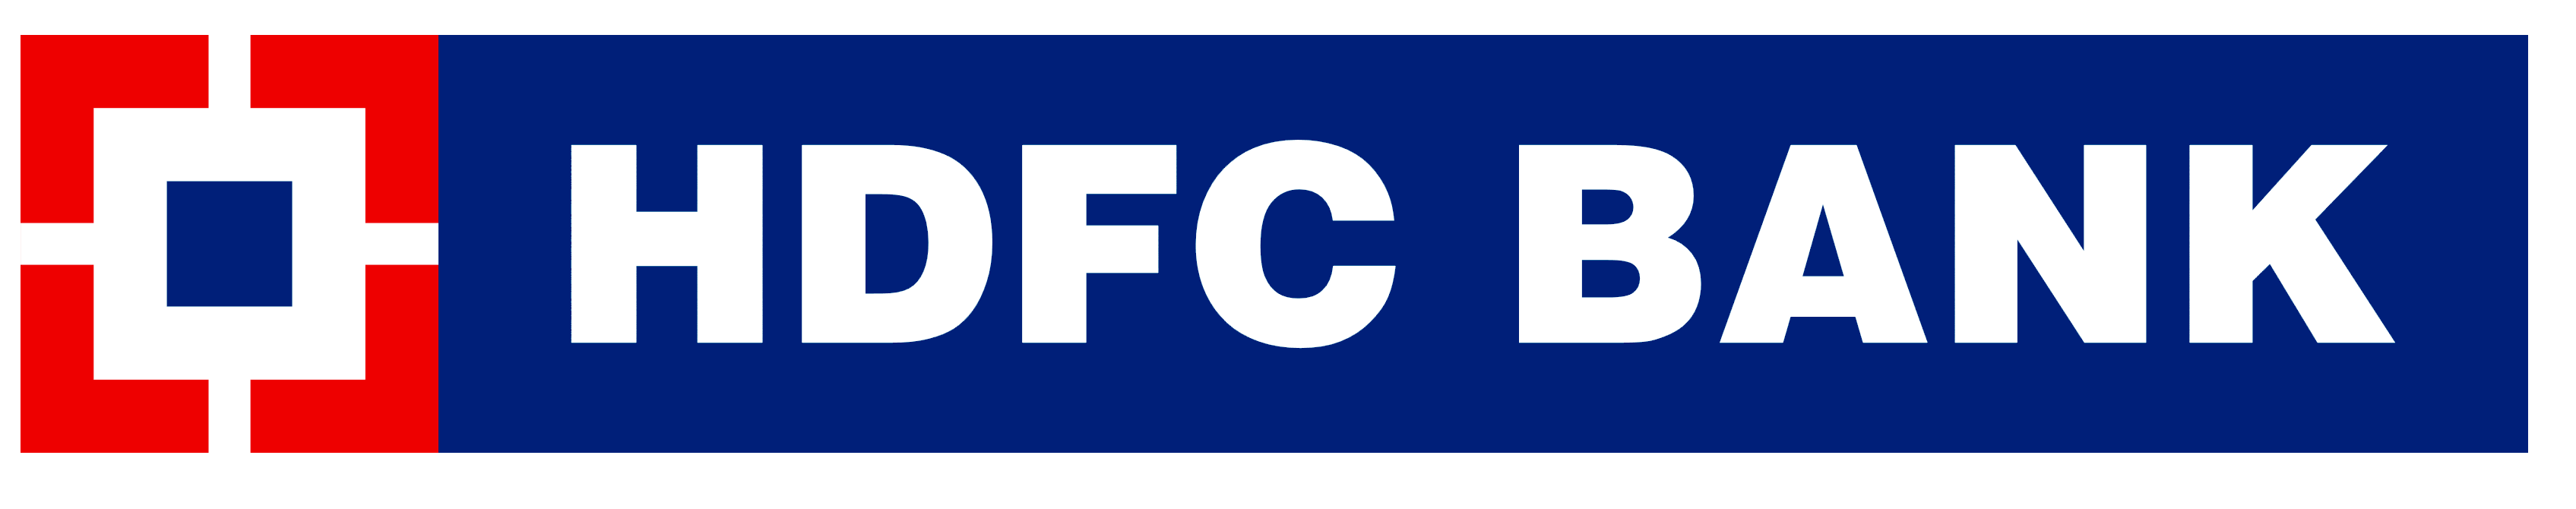 Hdfc bank vector logo